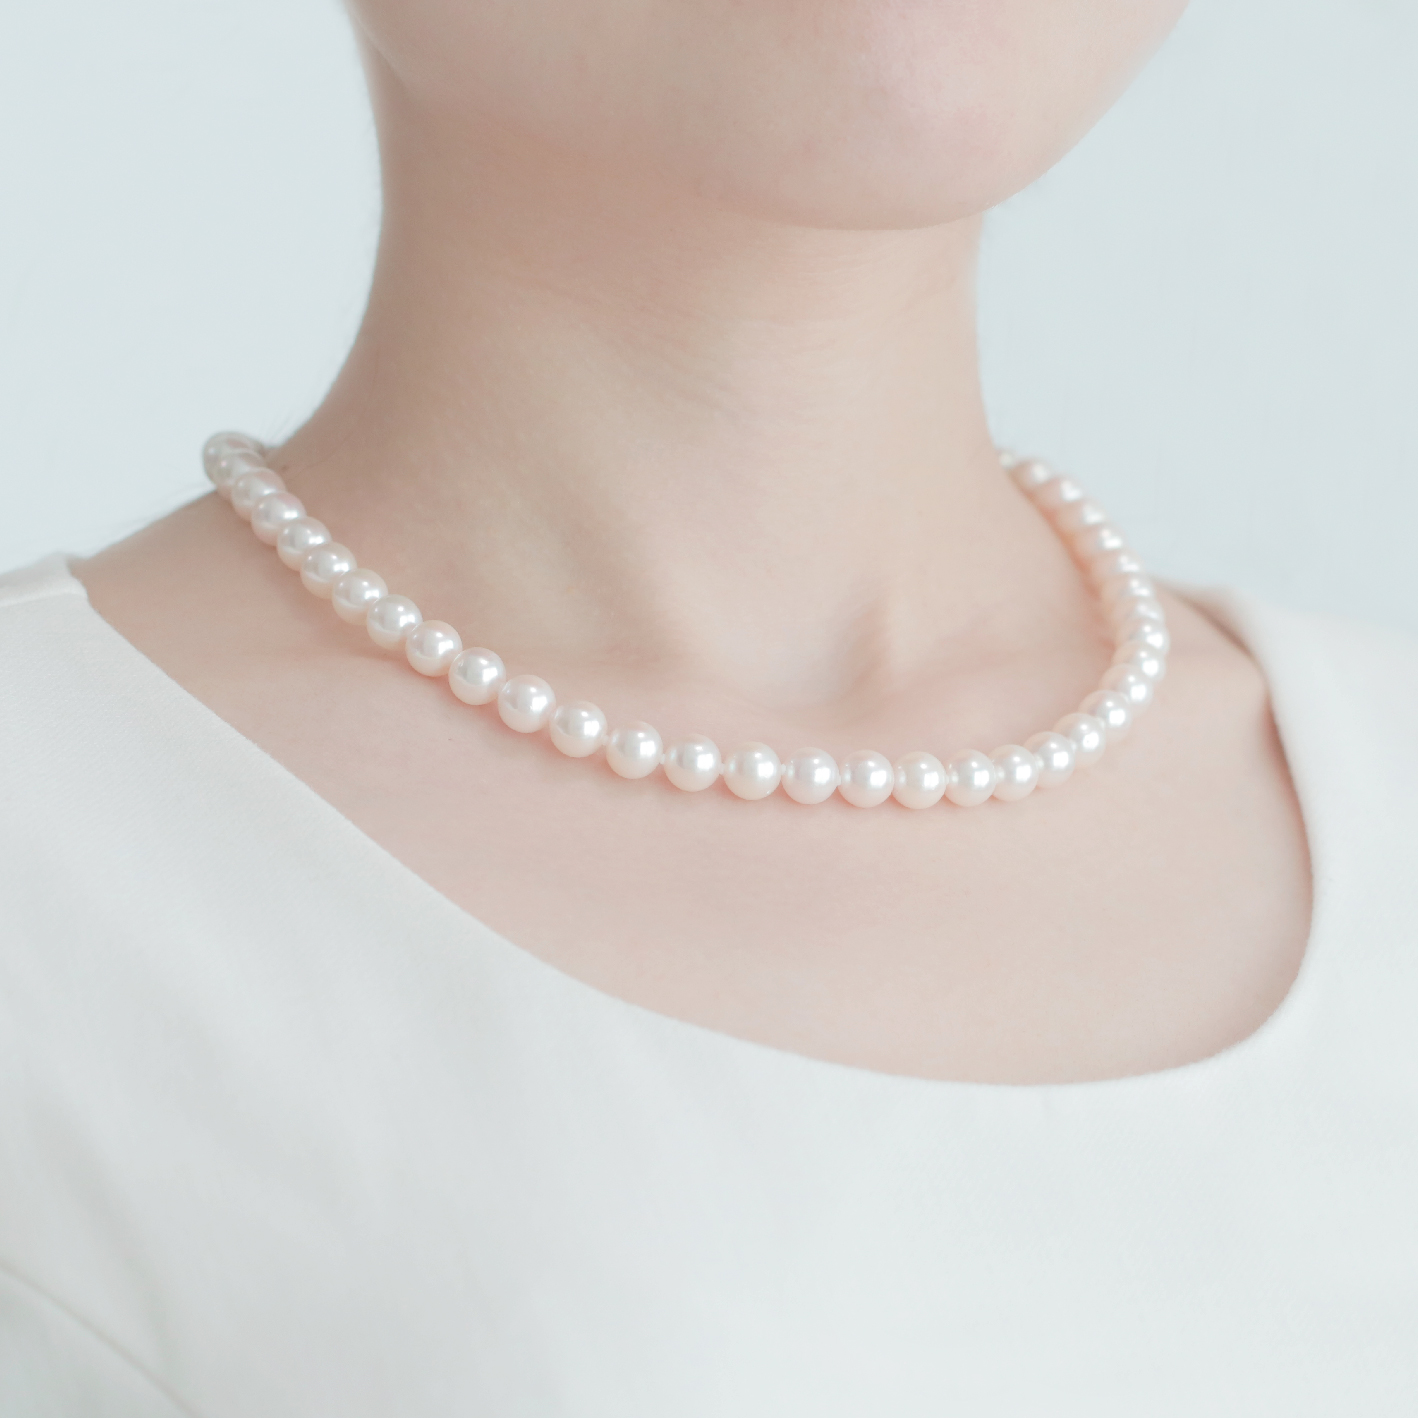 人気の ネックレス 一連 SV アコヤ真珠 約7.4～8.0mm程度 - ネックレス 